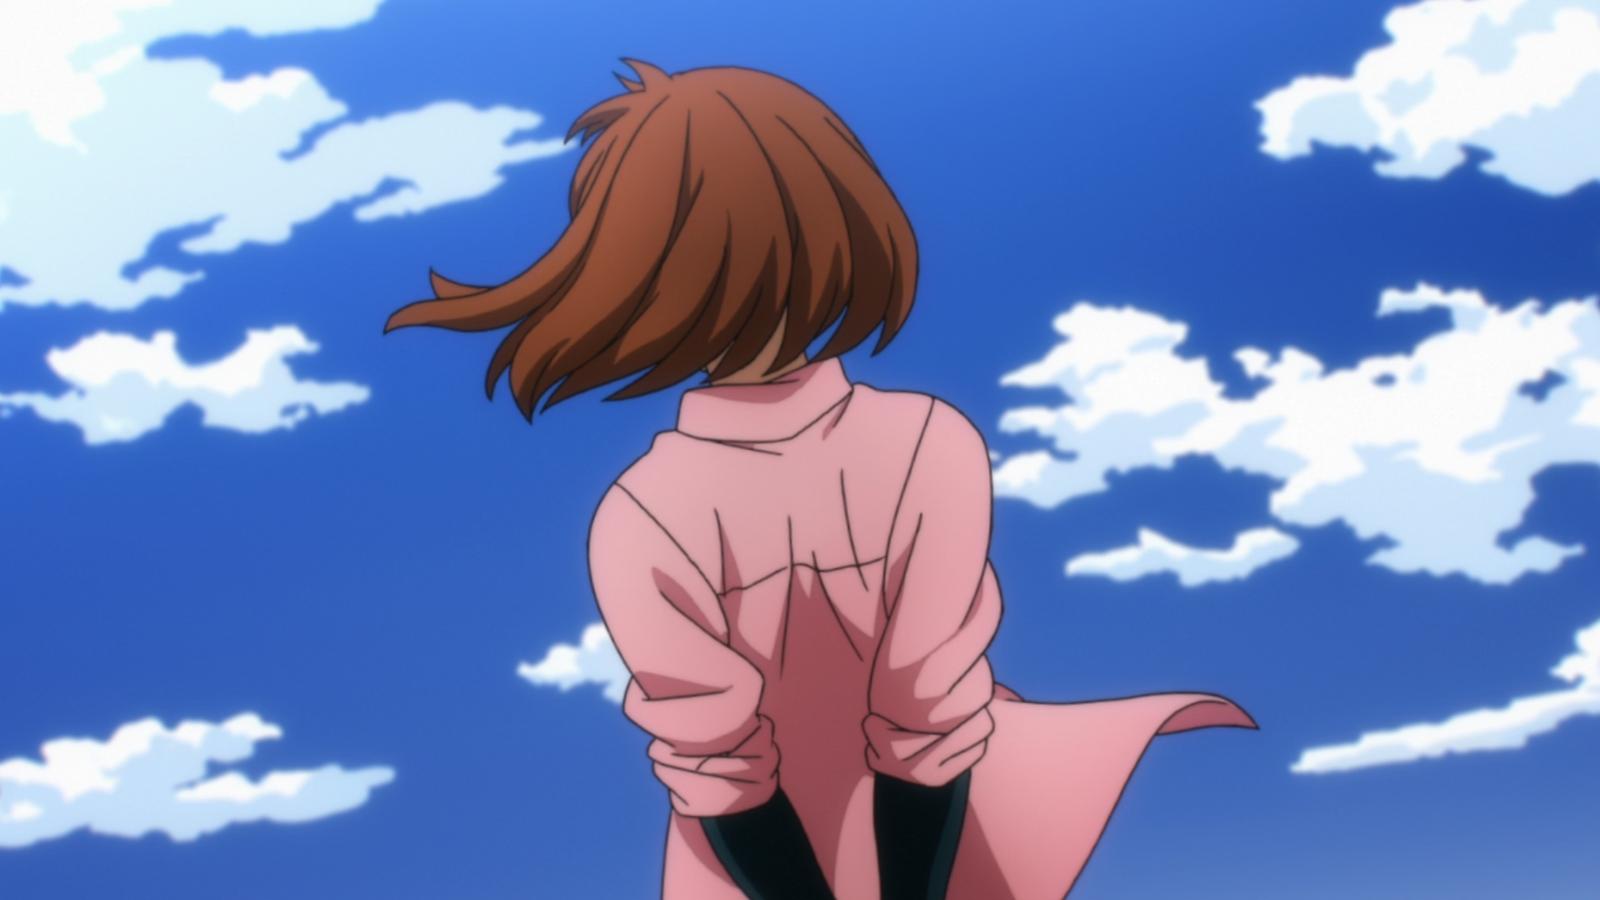 une fille portant une chemise rose (ochaco) regarde le ciel bleu